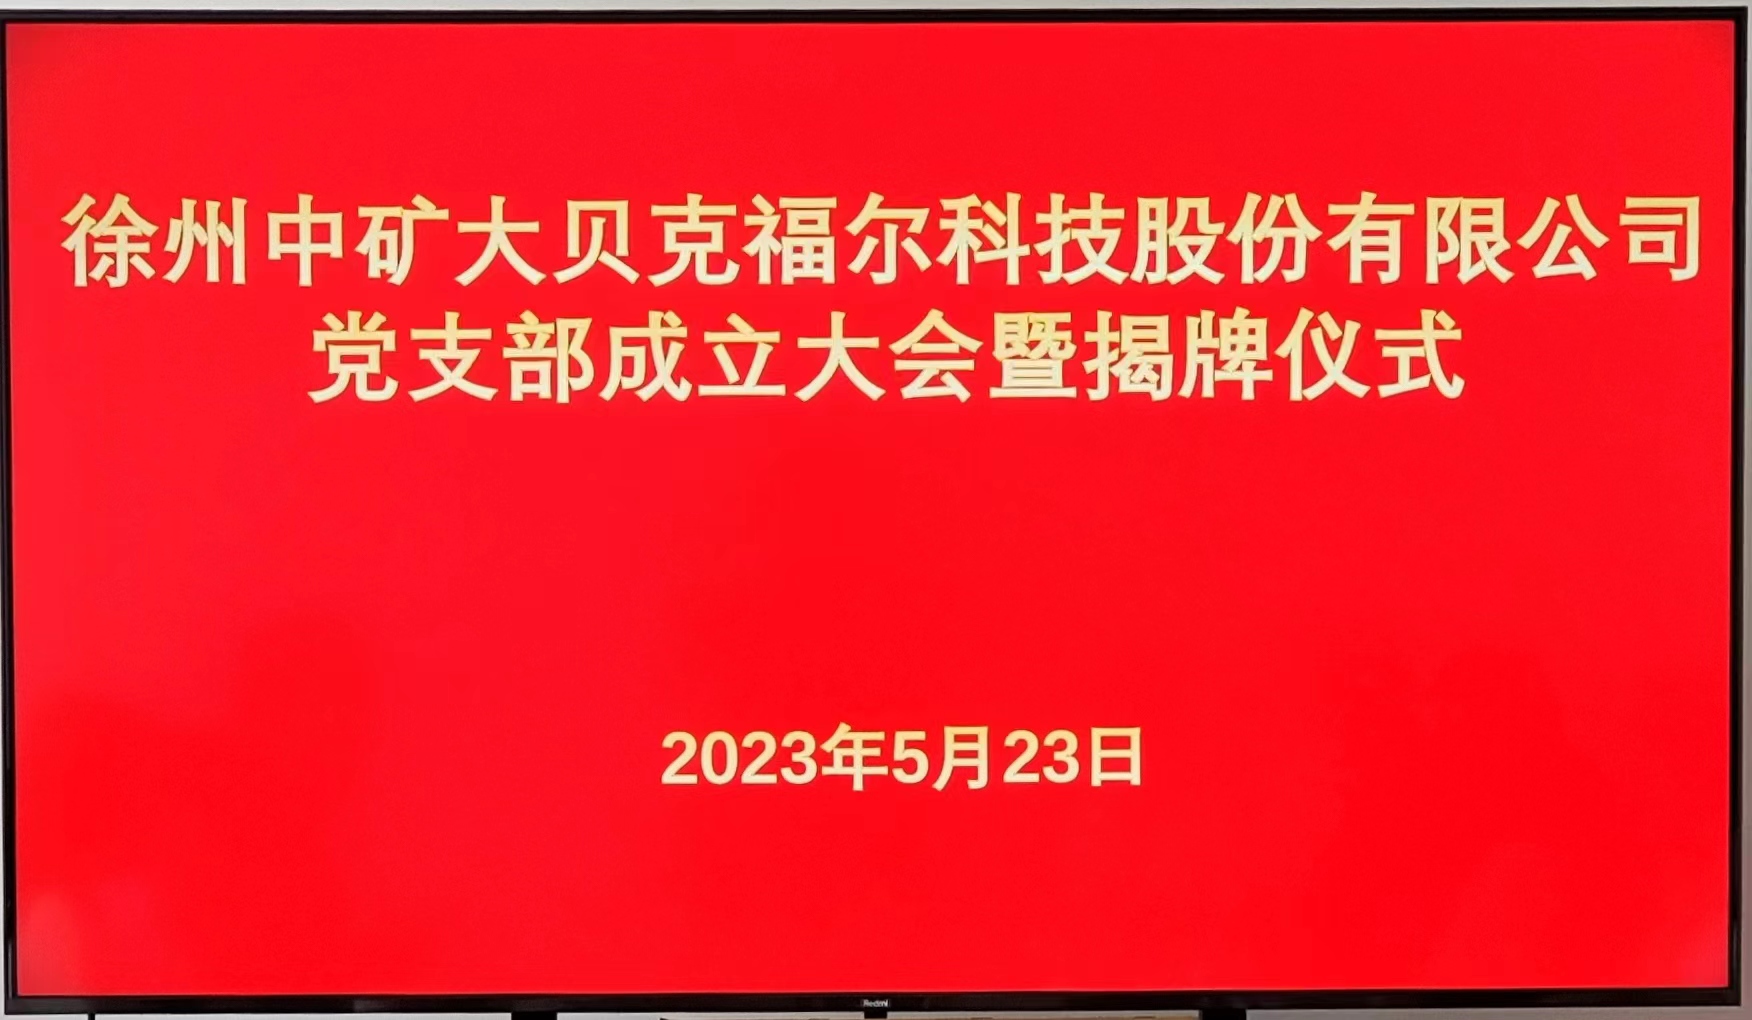 徐州中矿大贝克福尔科技股份有限公司党支部成立大会暨揭牌仪式成功举行